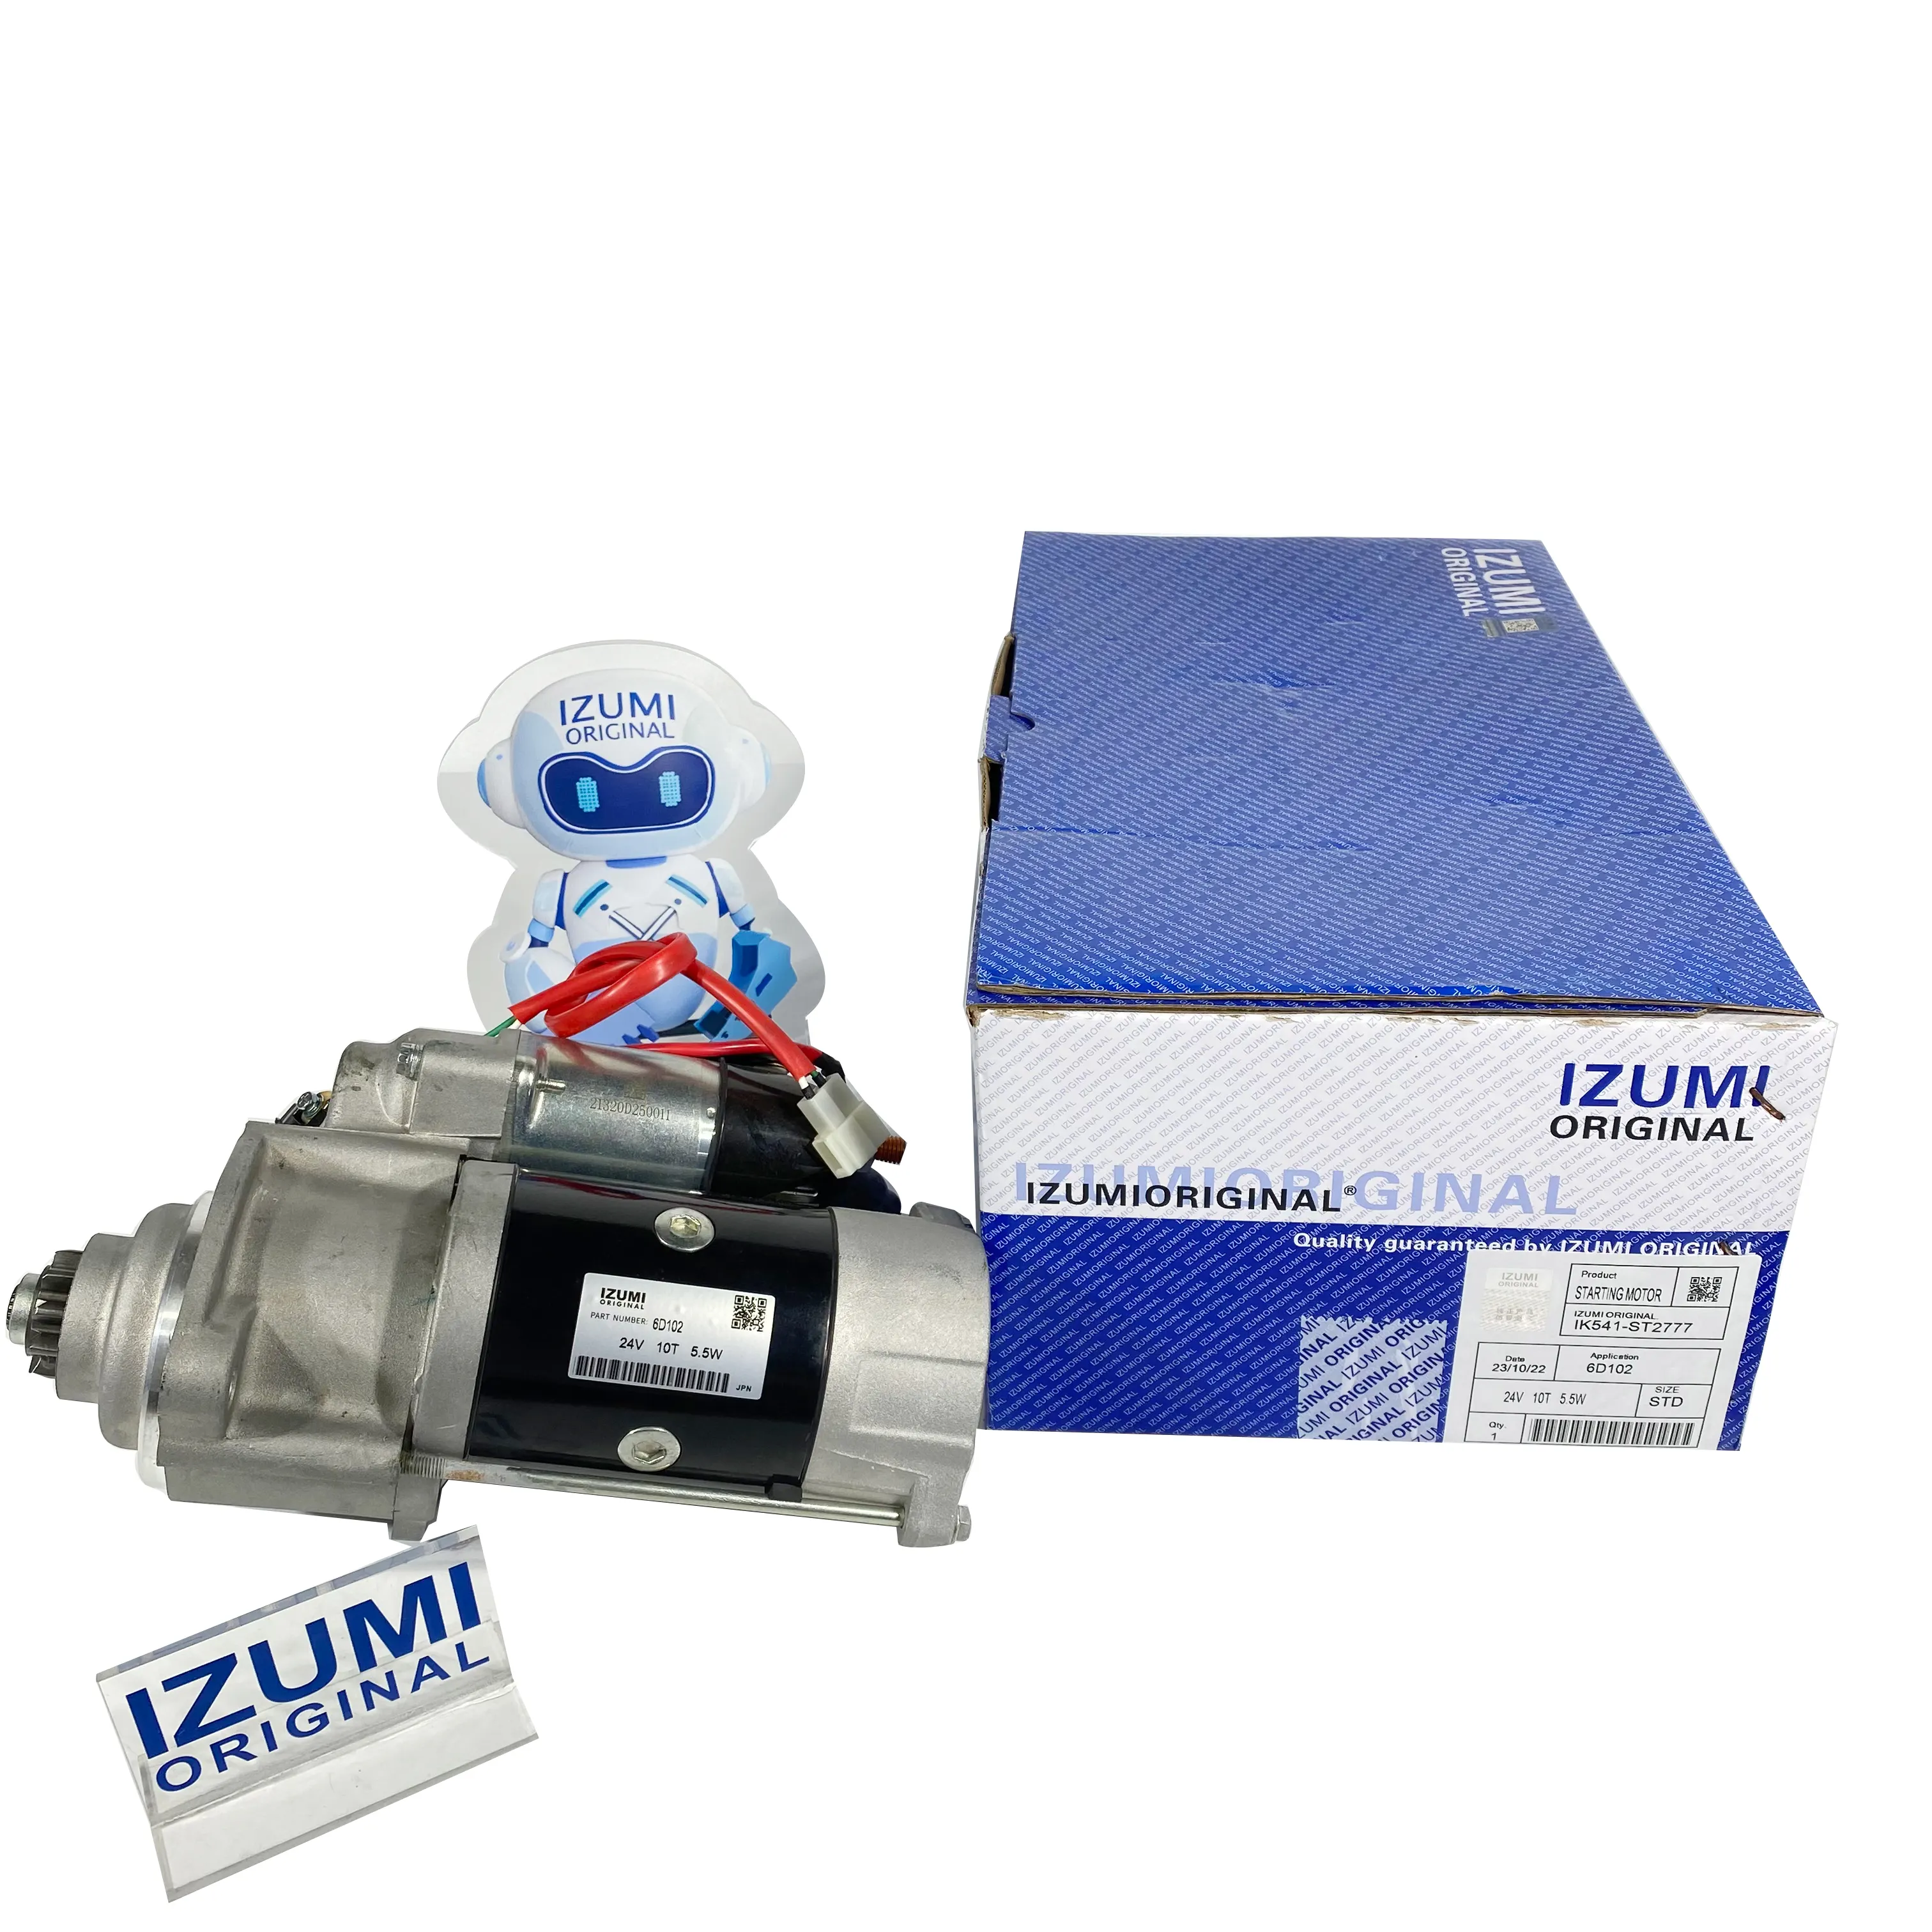 IZUMI Original starter for KOMATSU 6D102 engine 24v 10T 5.5KW start motor